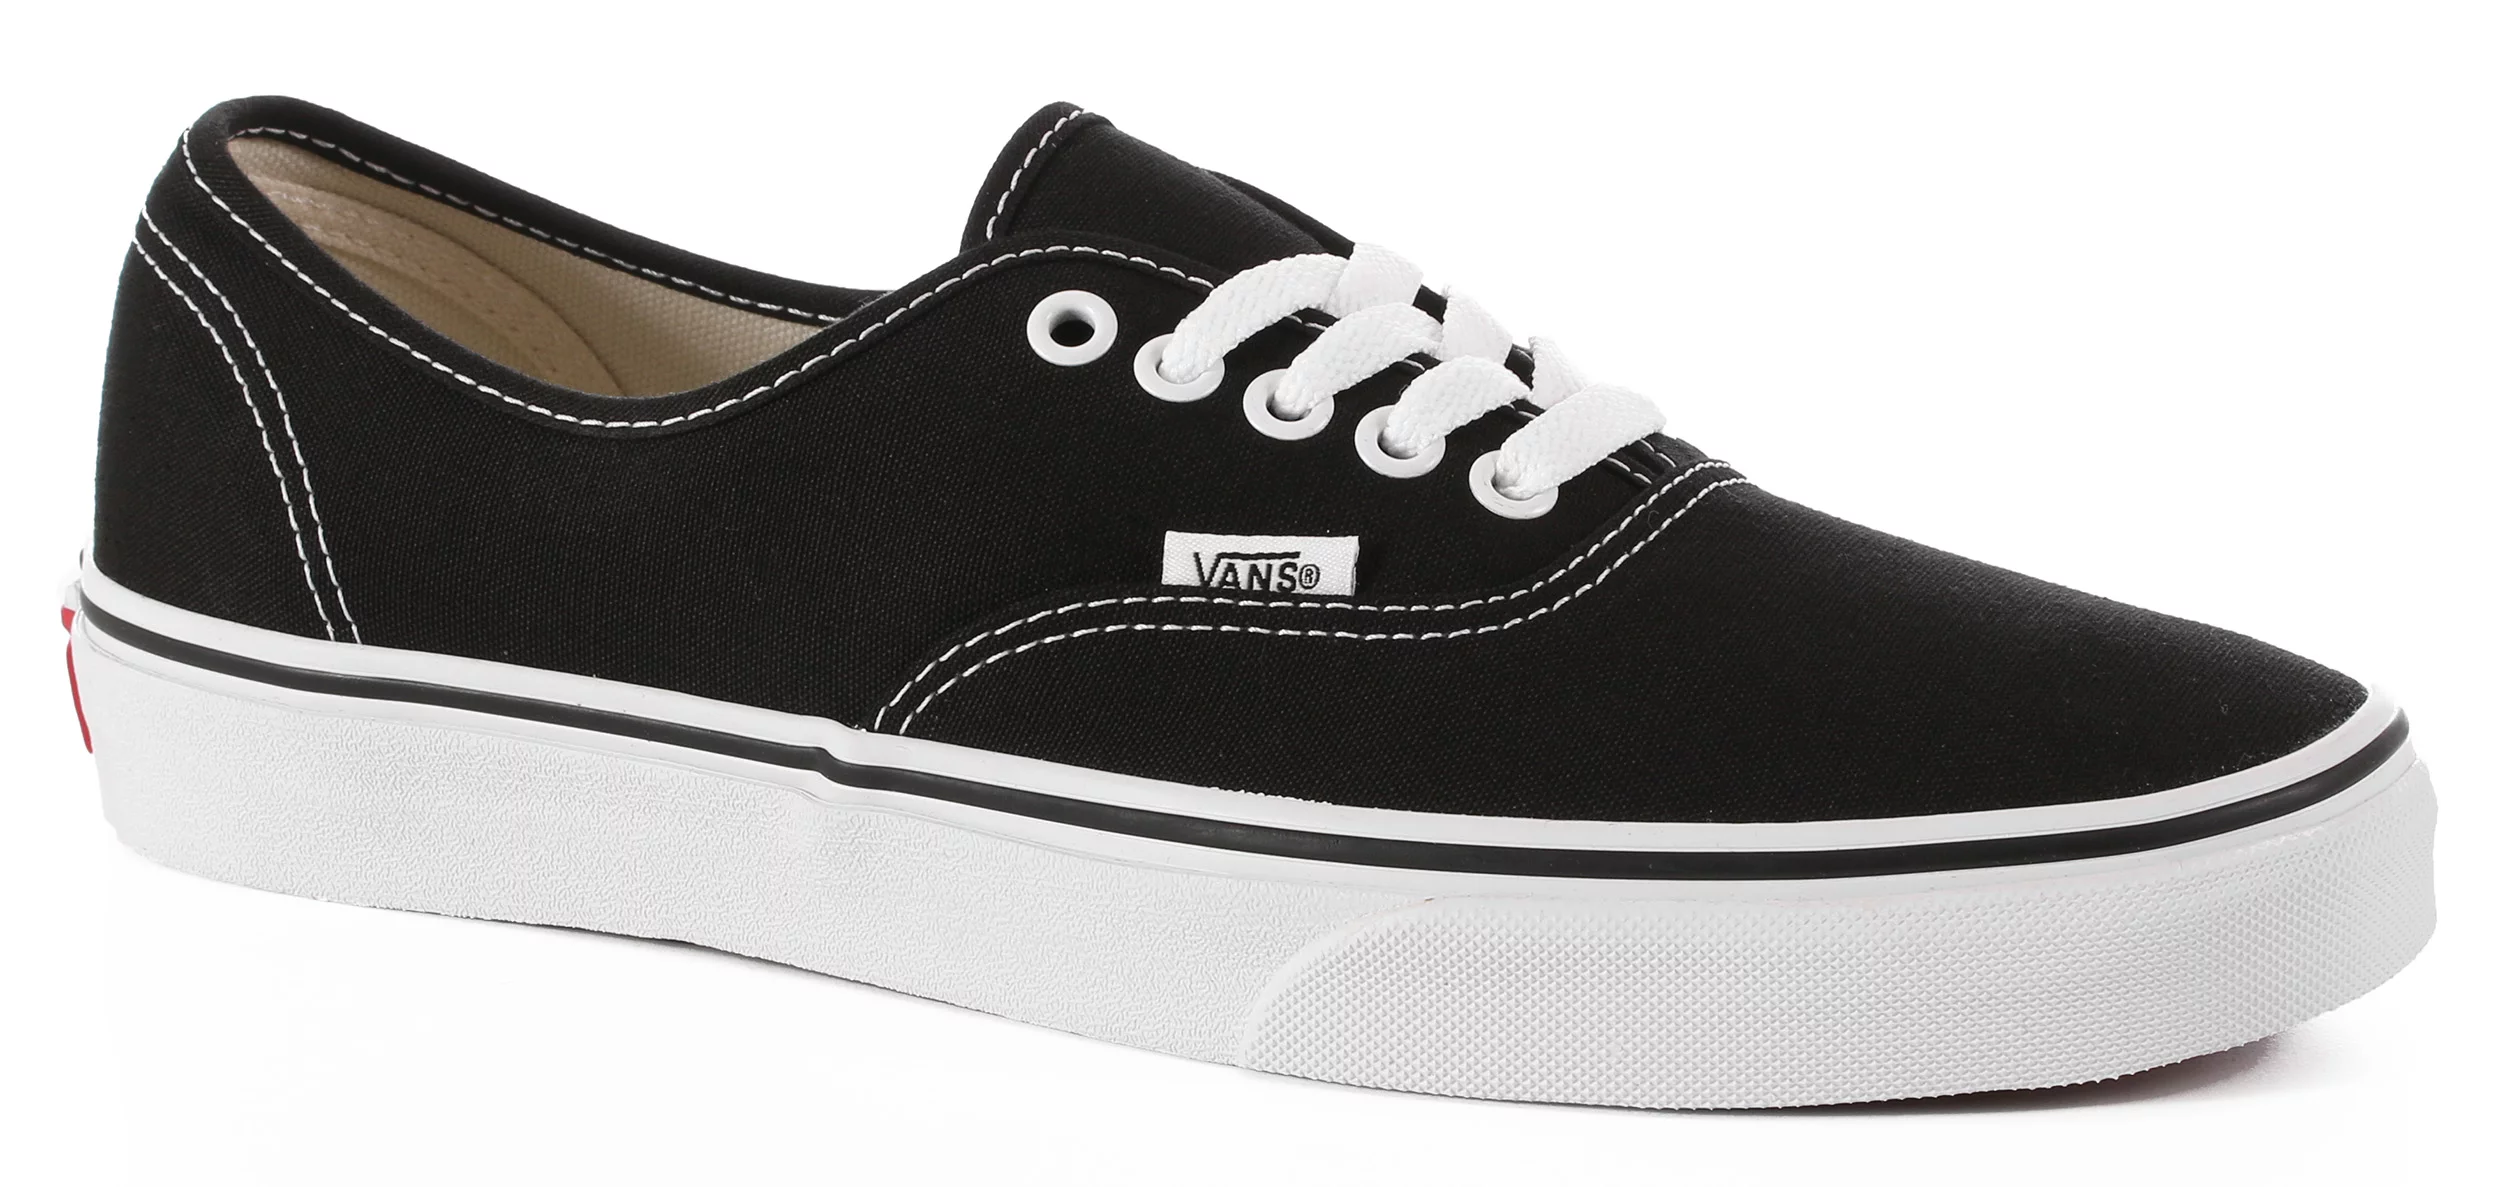 bang Tung lastbil Mig Vans Authentic Skate Shoes - black | Tactics